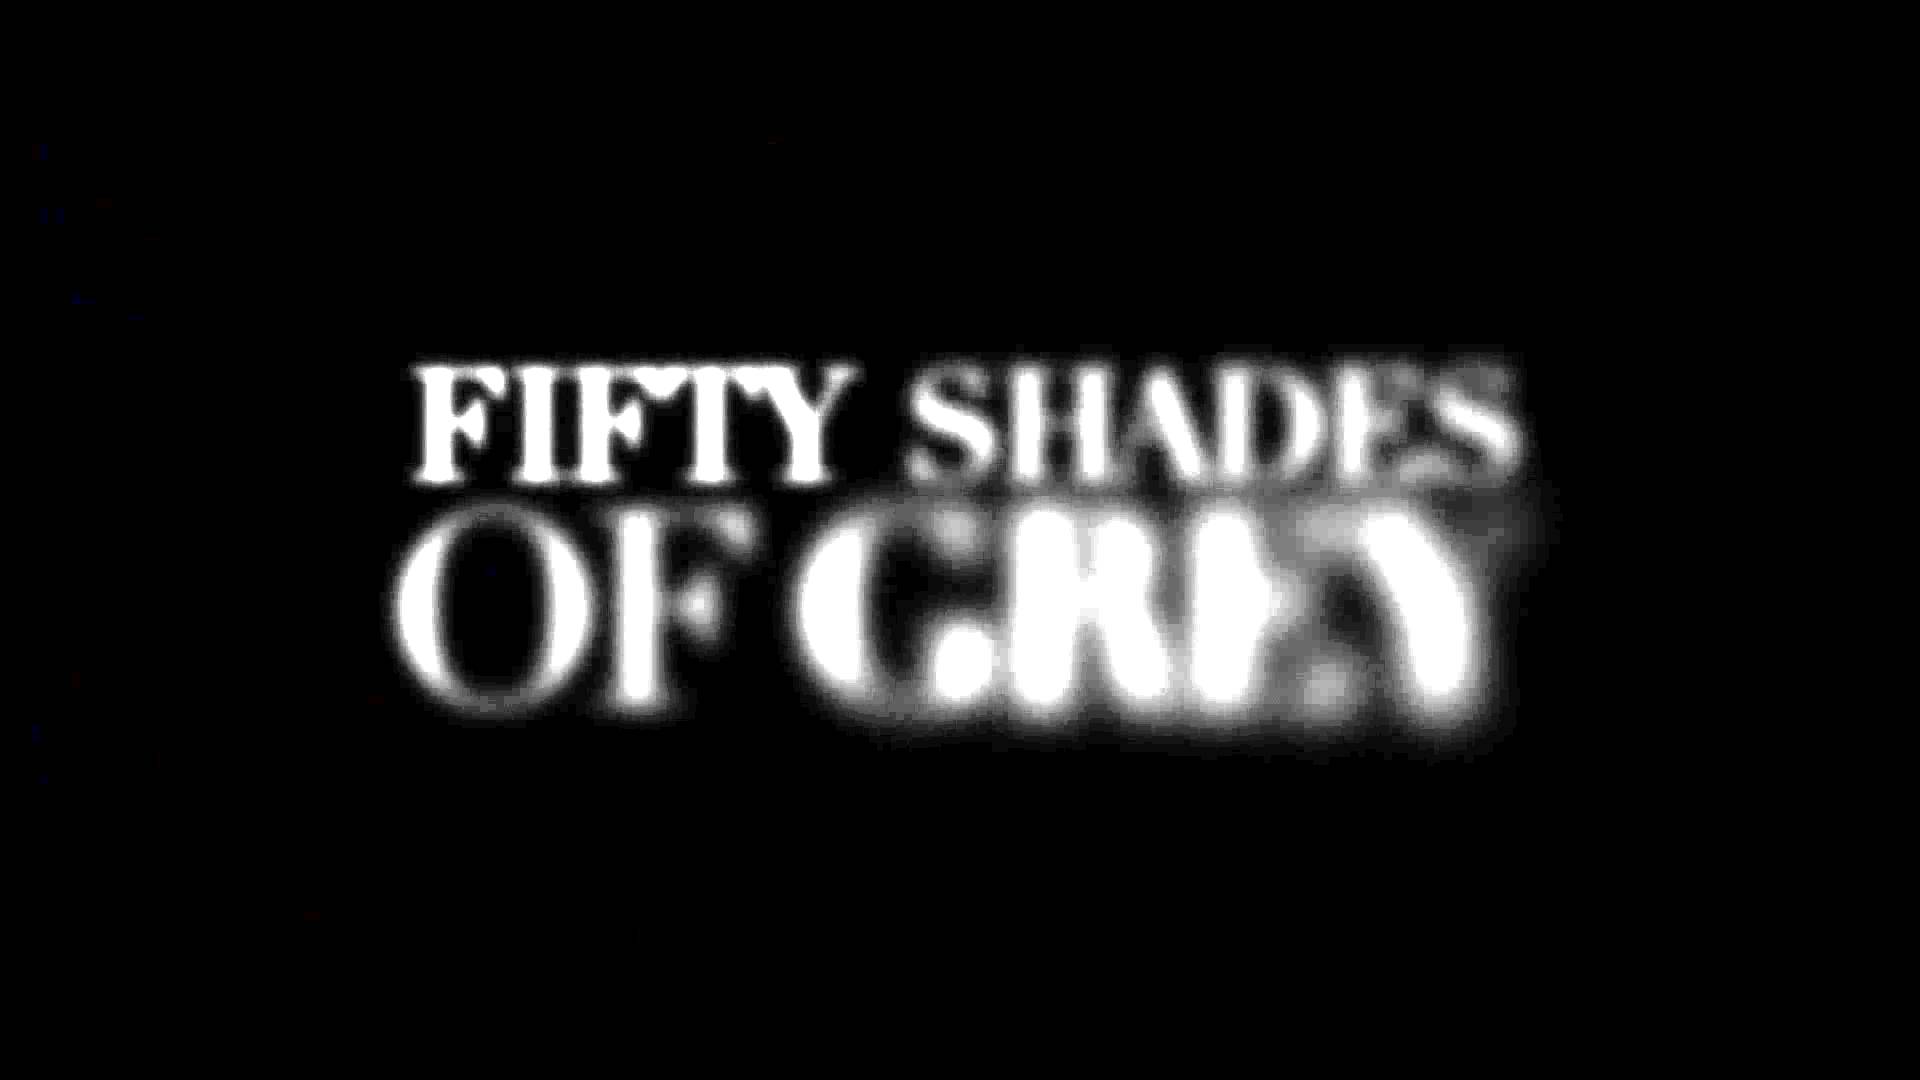 50 Shades of Grey Logo - Fifty Shades of Grey wallpaper 9